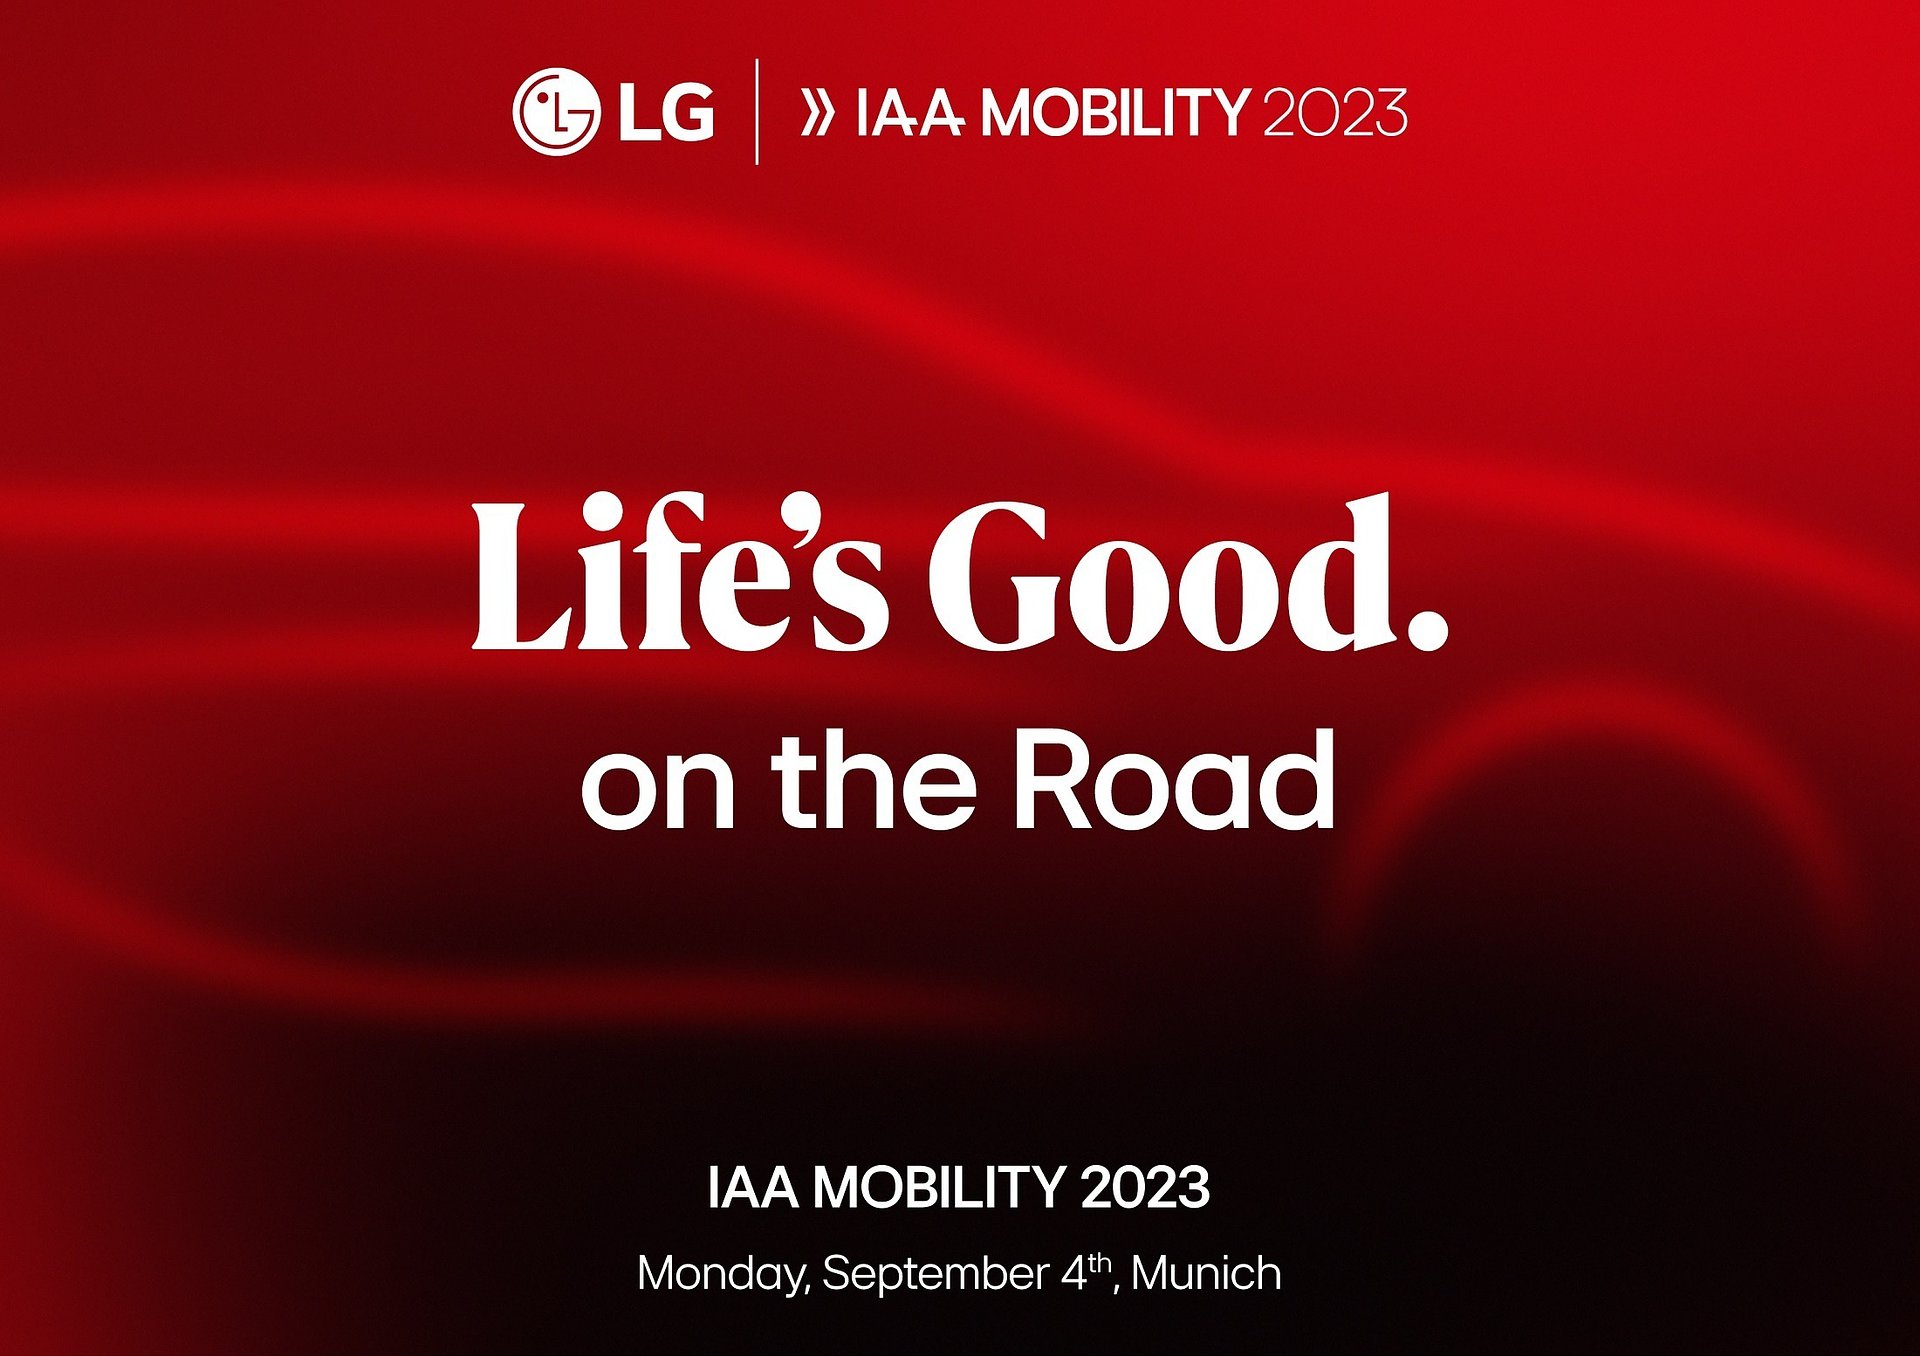 LG przedstawi wizję przyszłej mobilności podczas IAA Mobility 2023